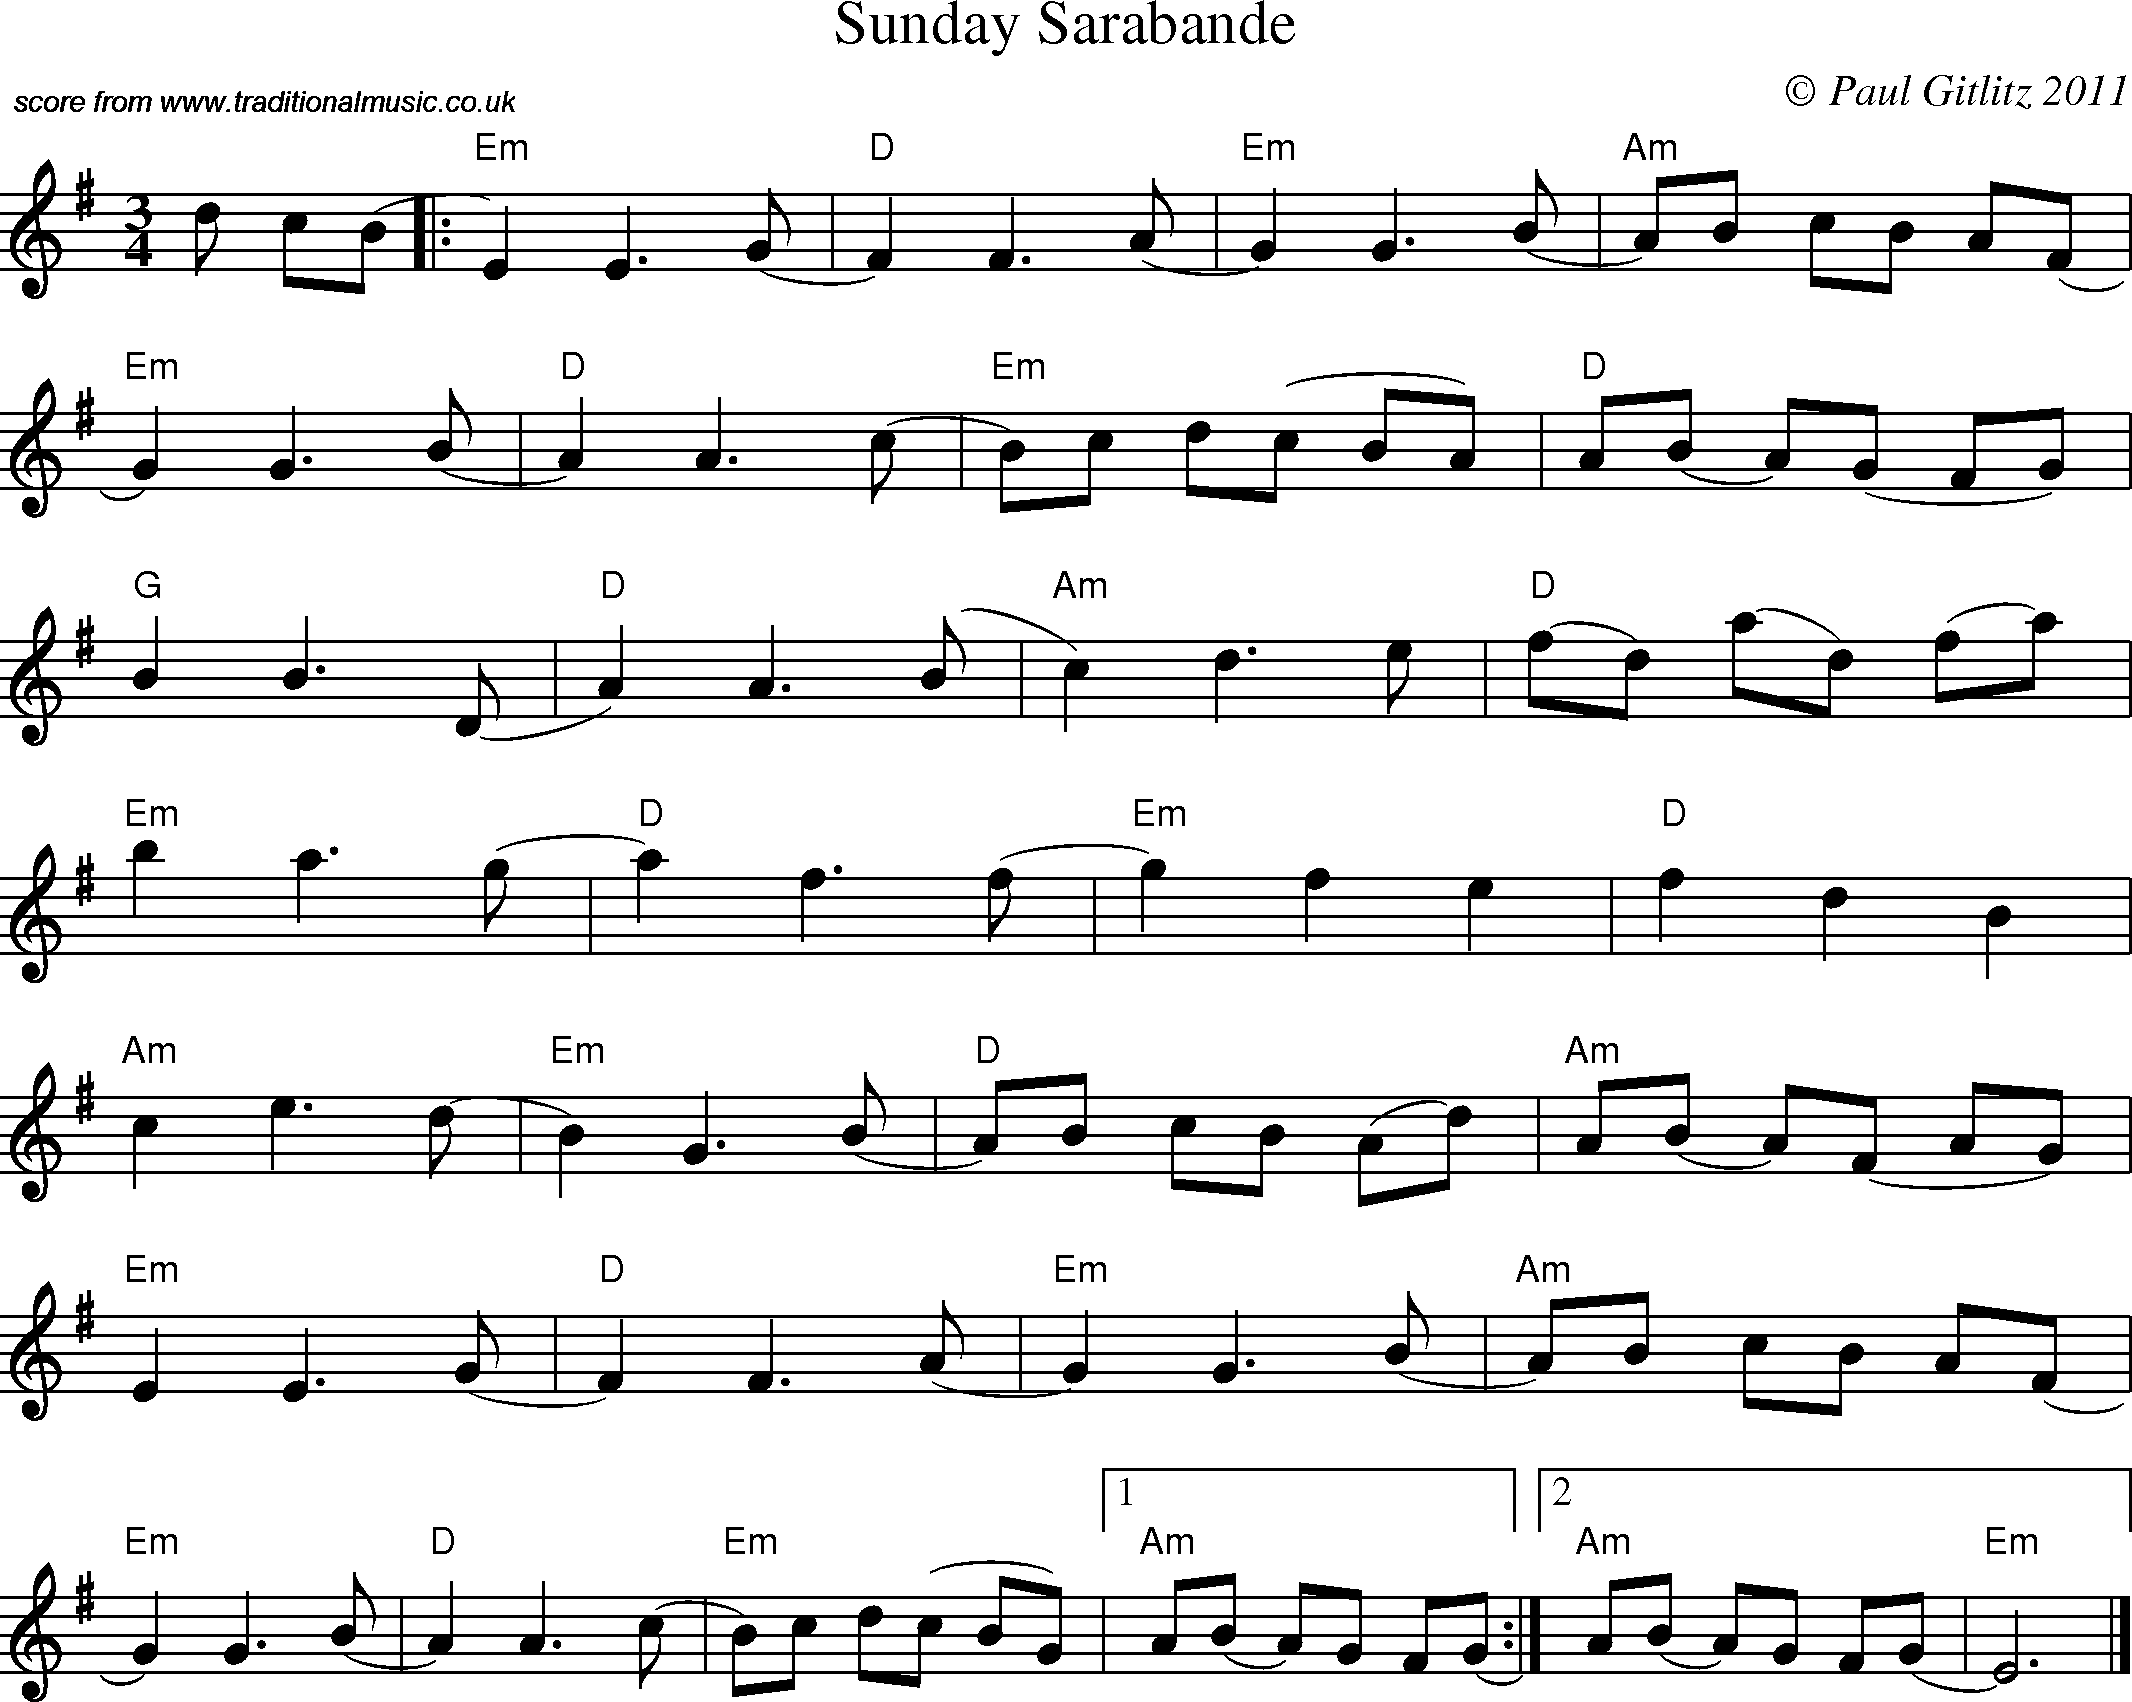 Sheet Music Score for Waltz - Sunday Sarabande